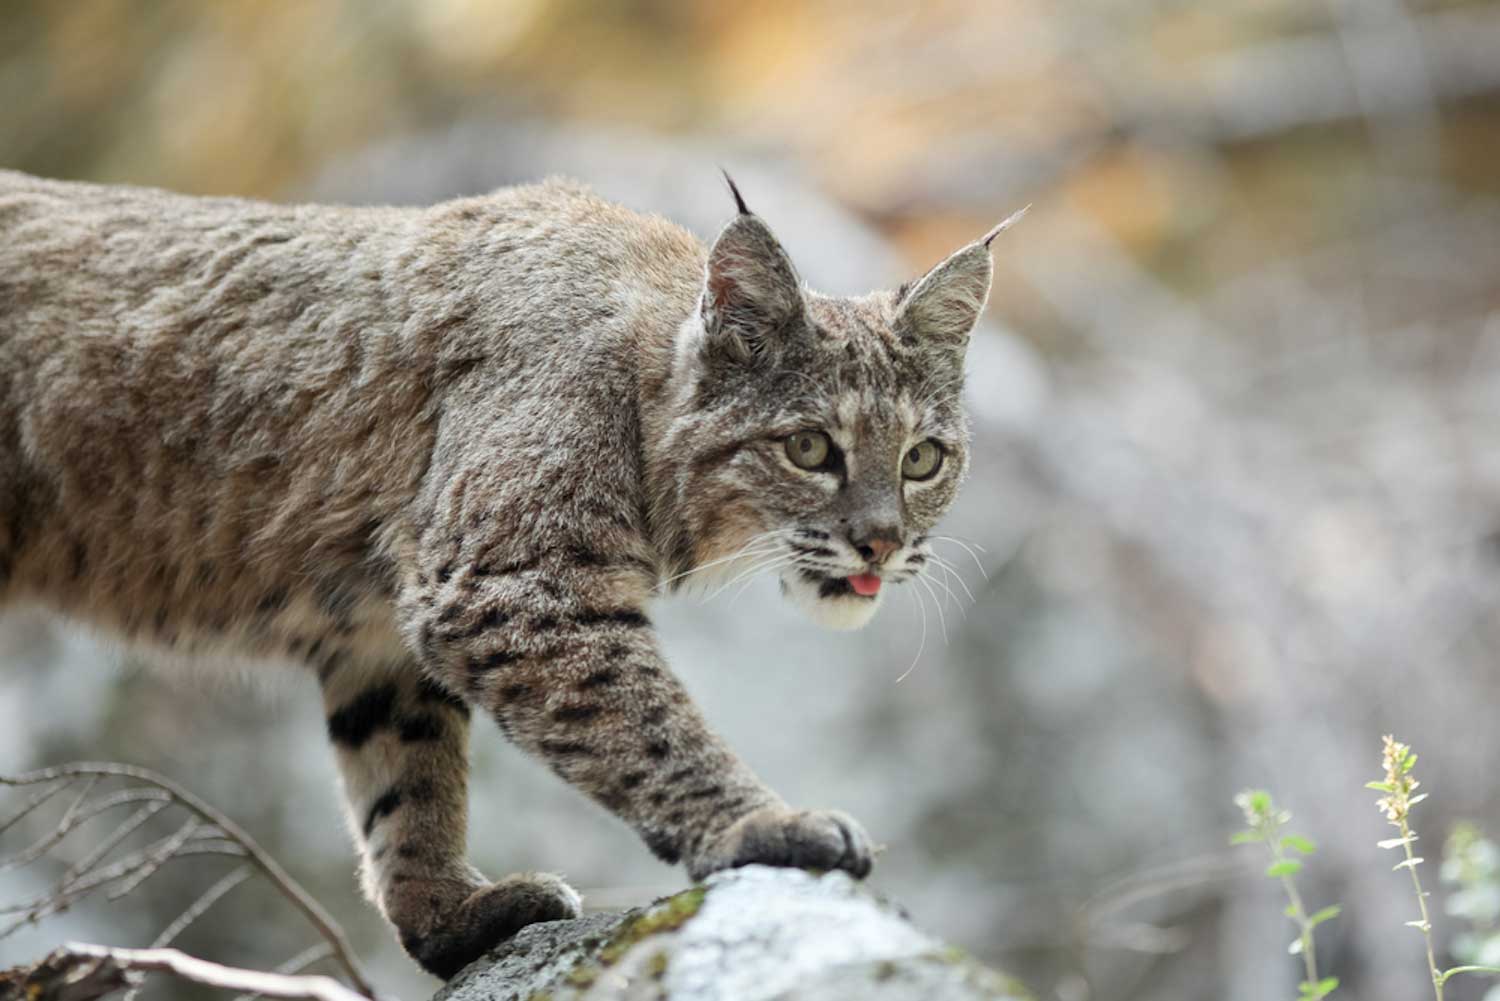 A bobcat walking 